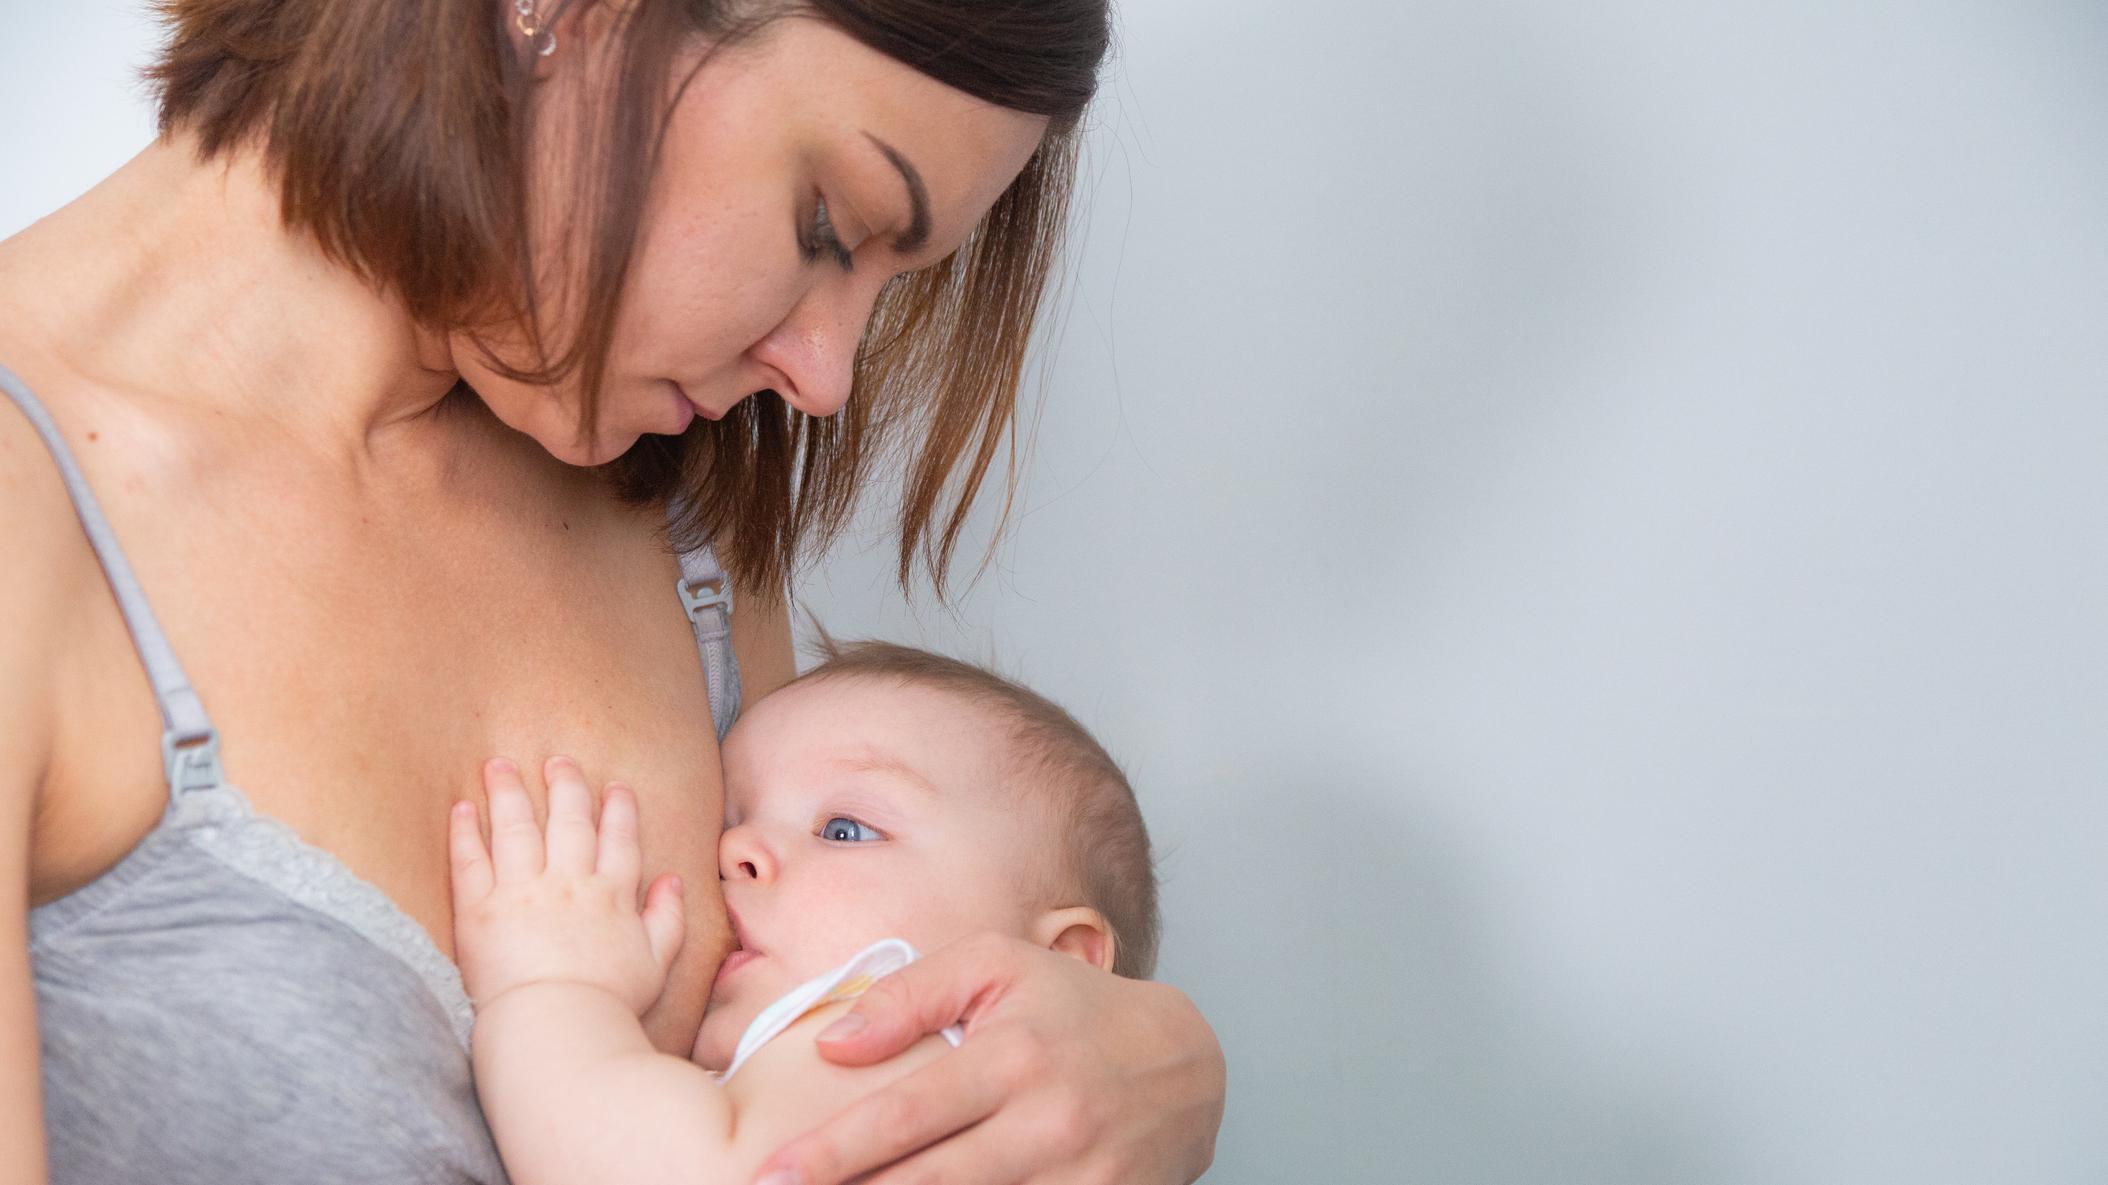 La lactancia materna es una de las formas más eficaces de garantizar la salud y la supervivencia del niño, asegura la OMS. 

Getty Images